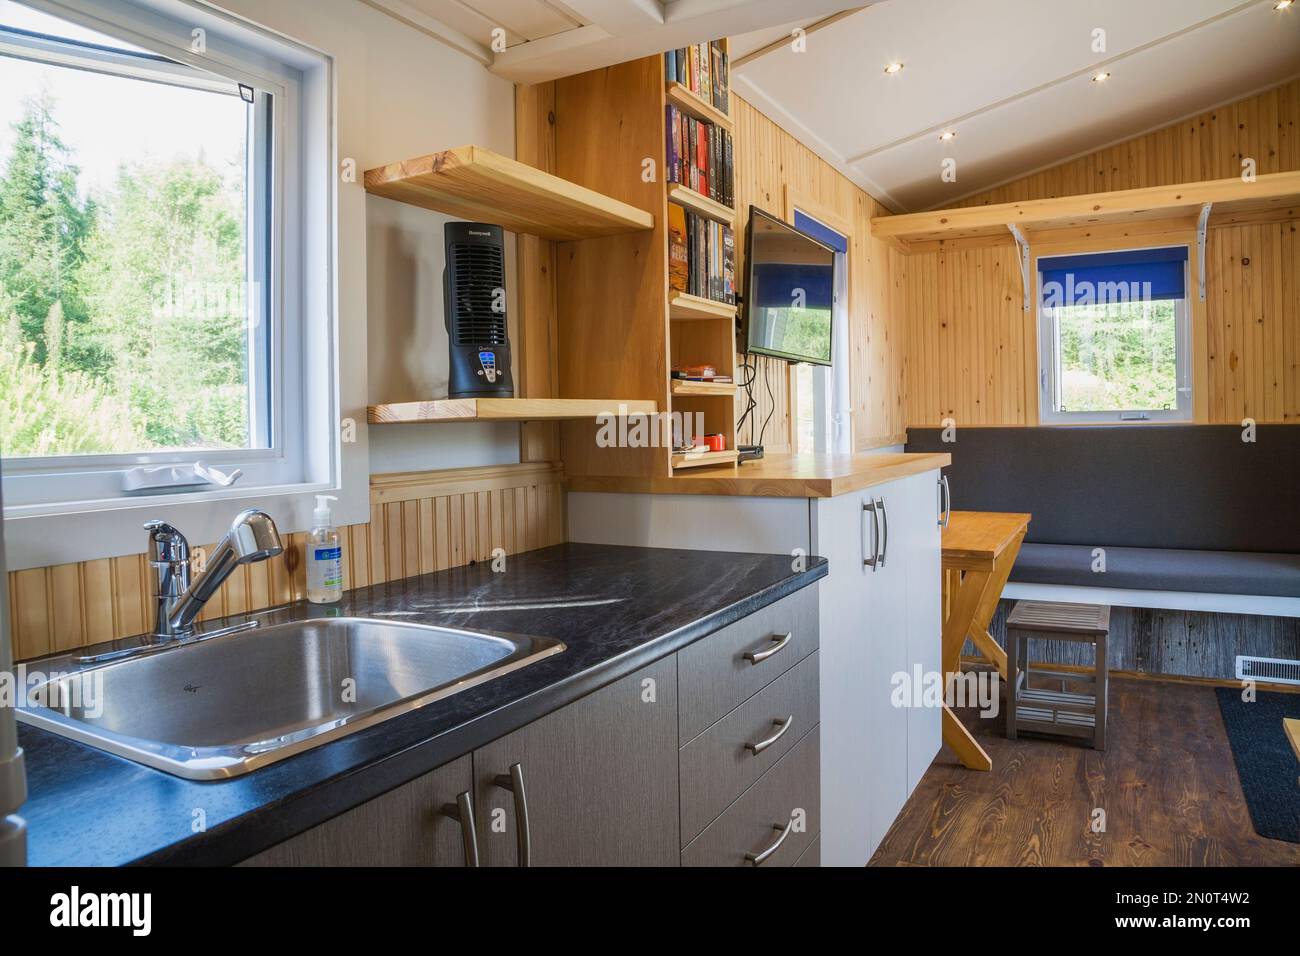 Encimera de cocina de arborita negra con gabinetes de melamina gris y  blanco, vista de la sala de estar principal con mesa de comedor de madera  de pino expandible dentro del contenido